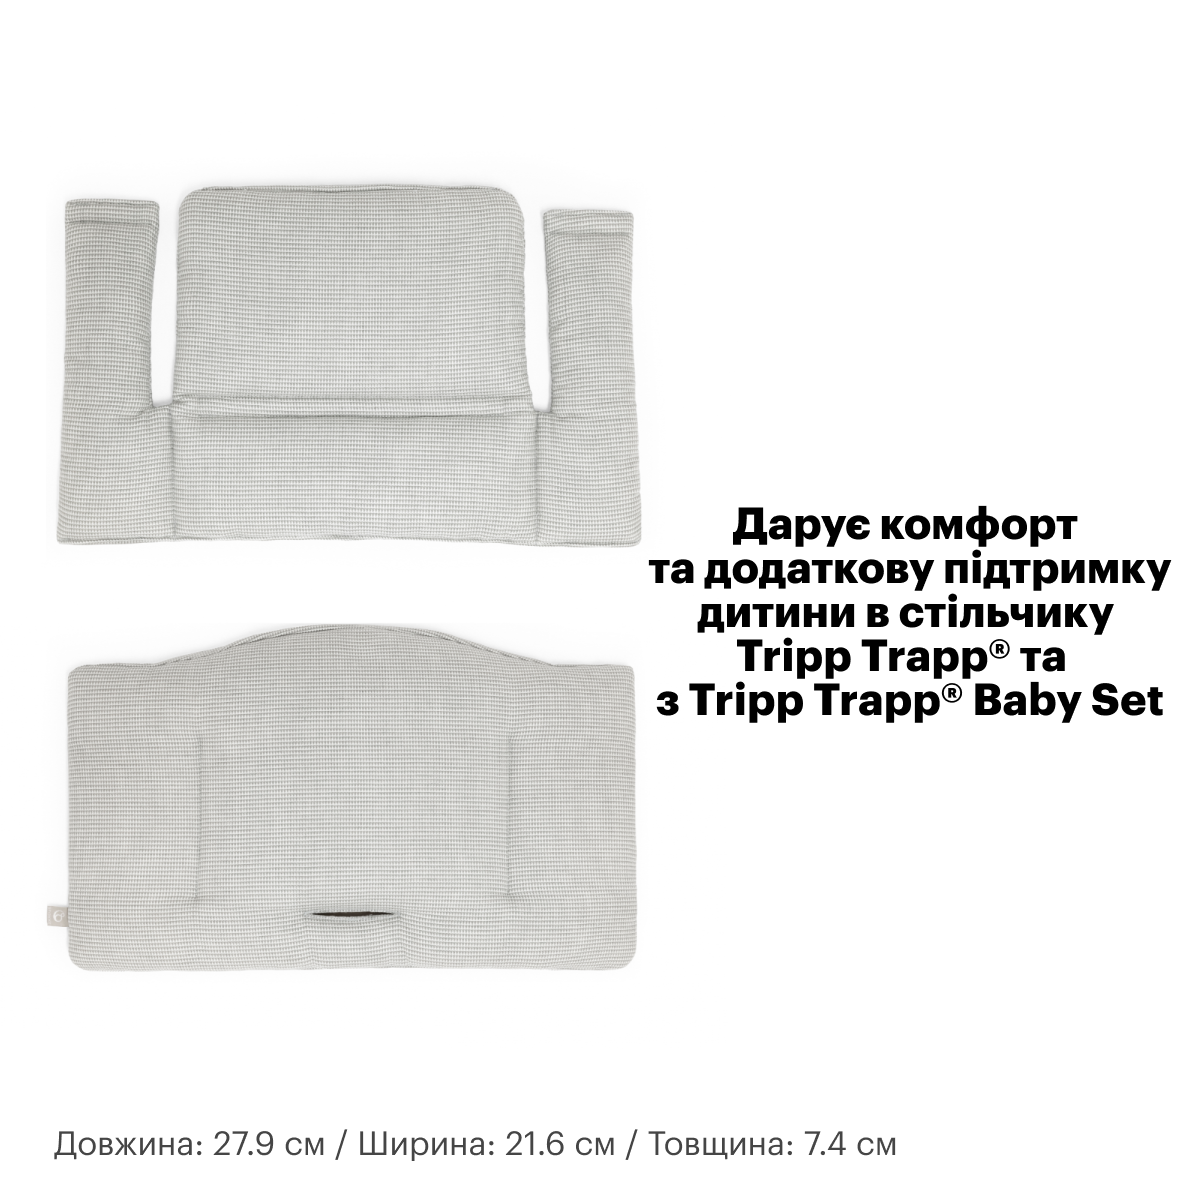 Текстиль для стульчика Stokke Tripp Trapp Lucky grey (100365) - фото 5